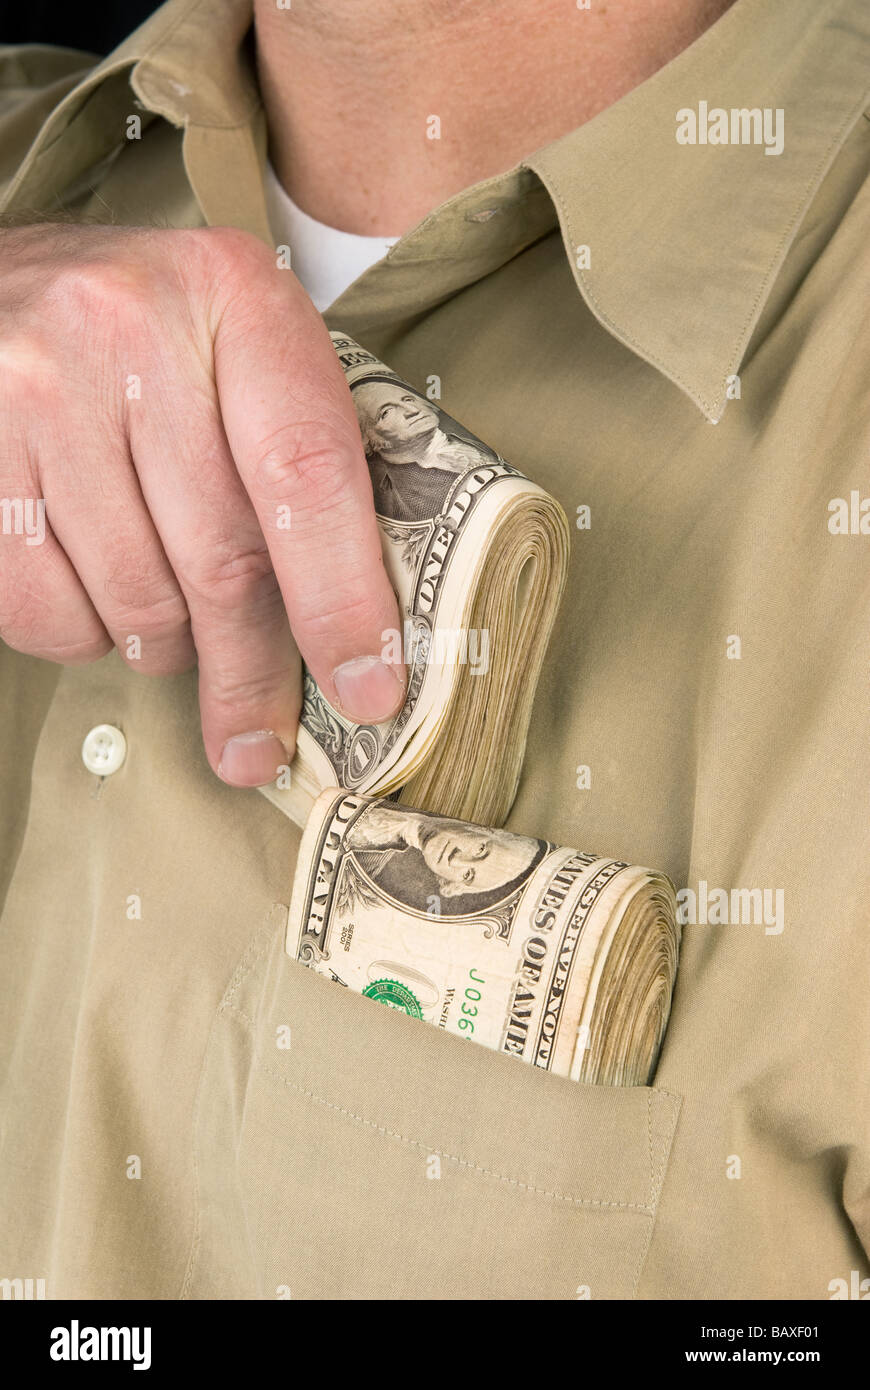 Un homme met liasses de billets dans sa poche de chemise Banque D'Images